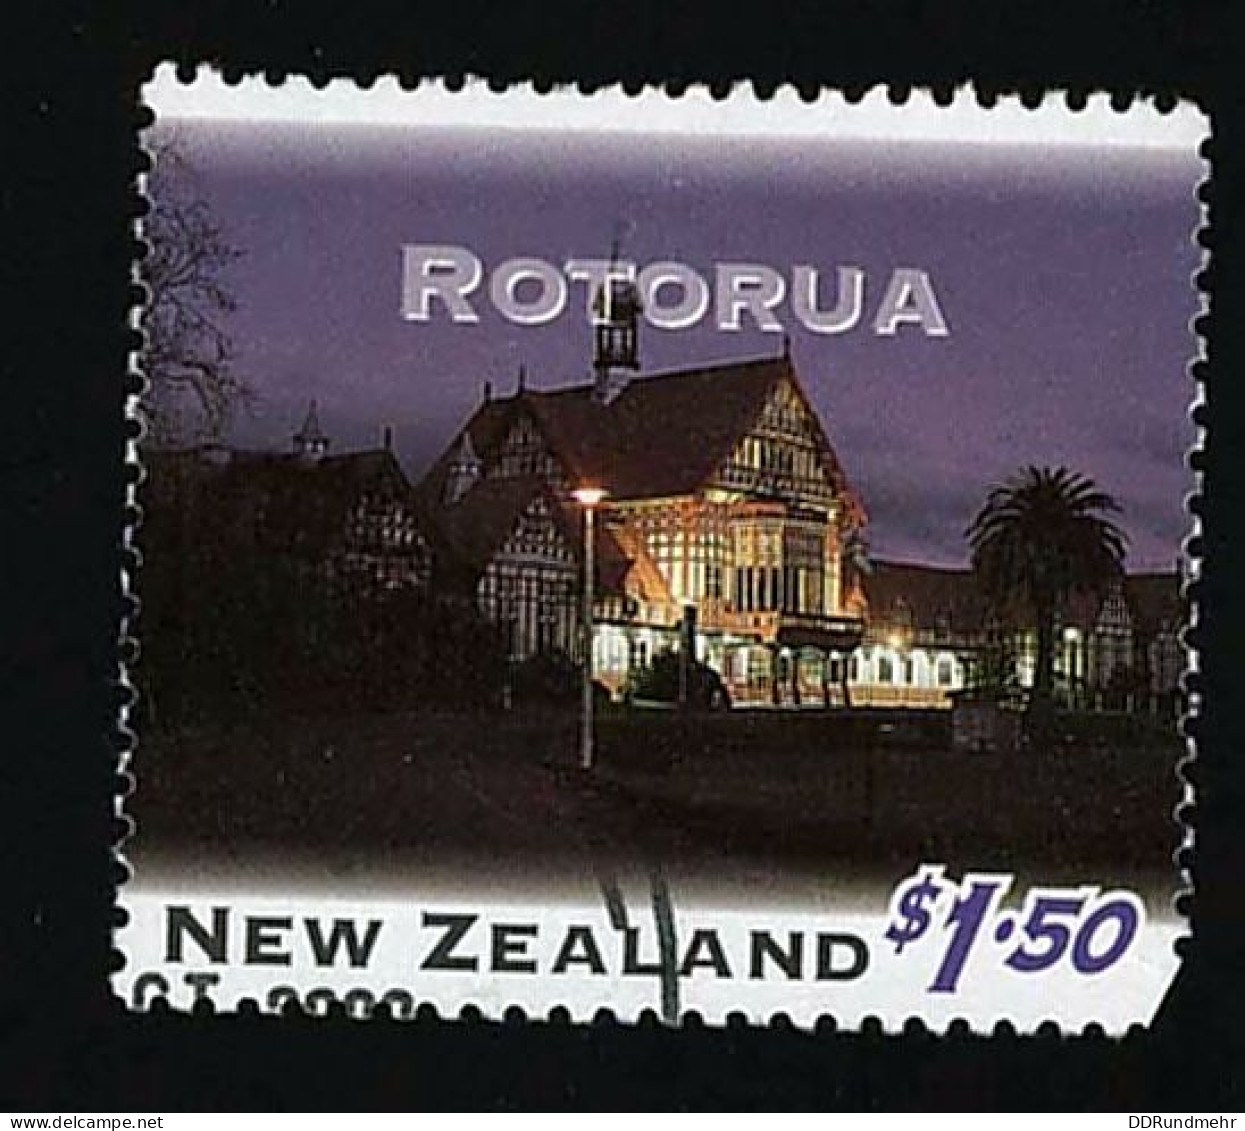 1995 Rotorua Michel NZ 1403 Stamp Number NZ 1253 Yvert Et Tellier NZ 1346 Stanley Gibbons NZ 1859 - Gebraucht